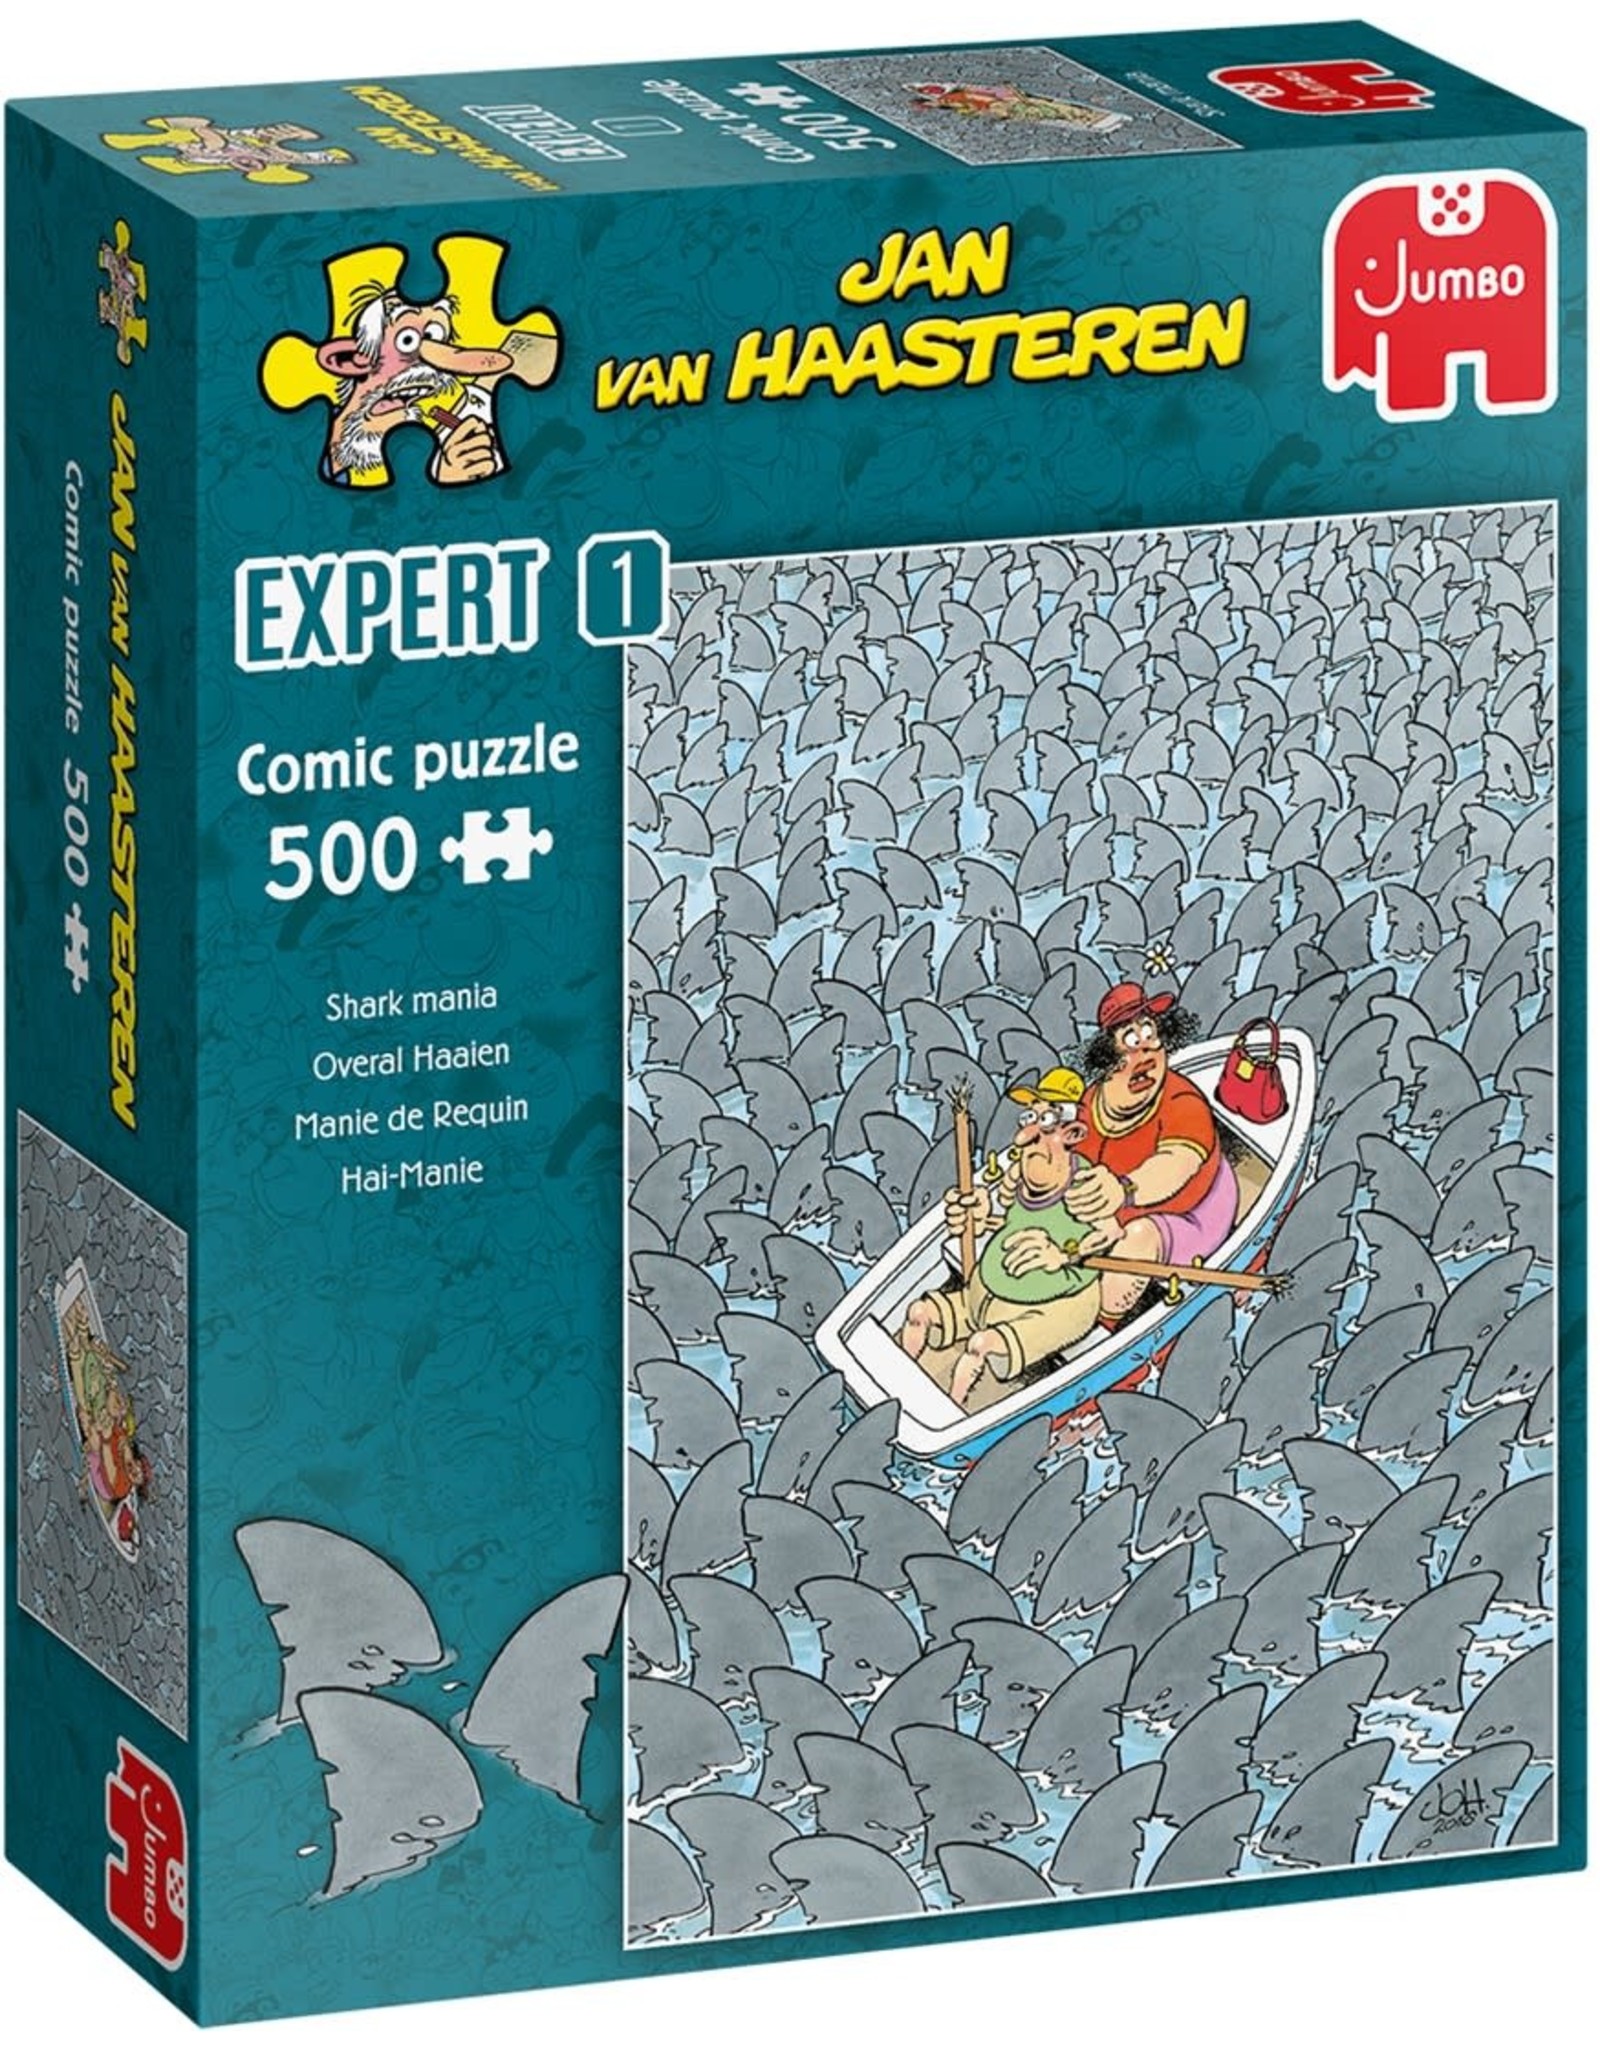 JUMBO Jan van Haasteren Expert 1 - Overal Haaien (500 stukjes)